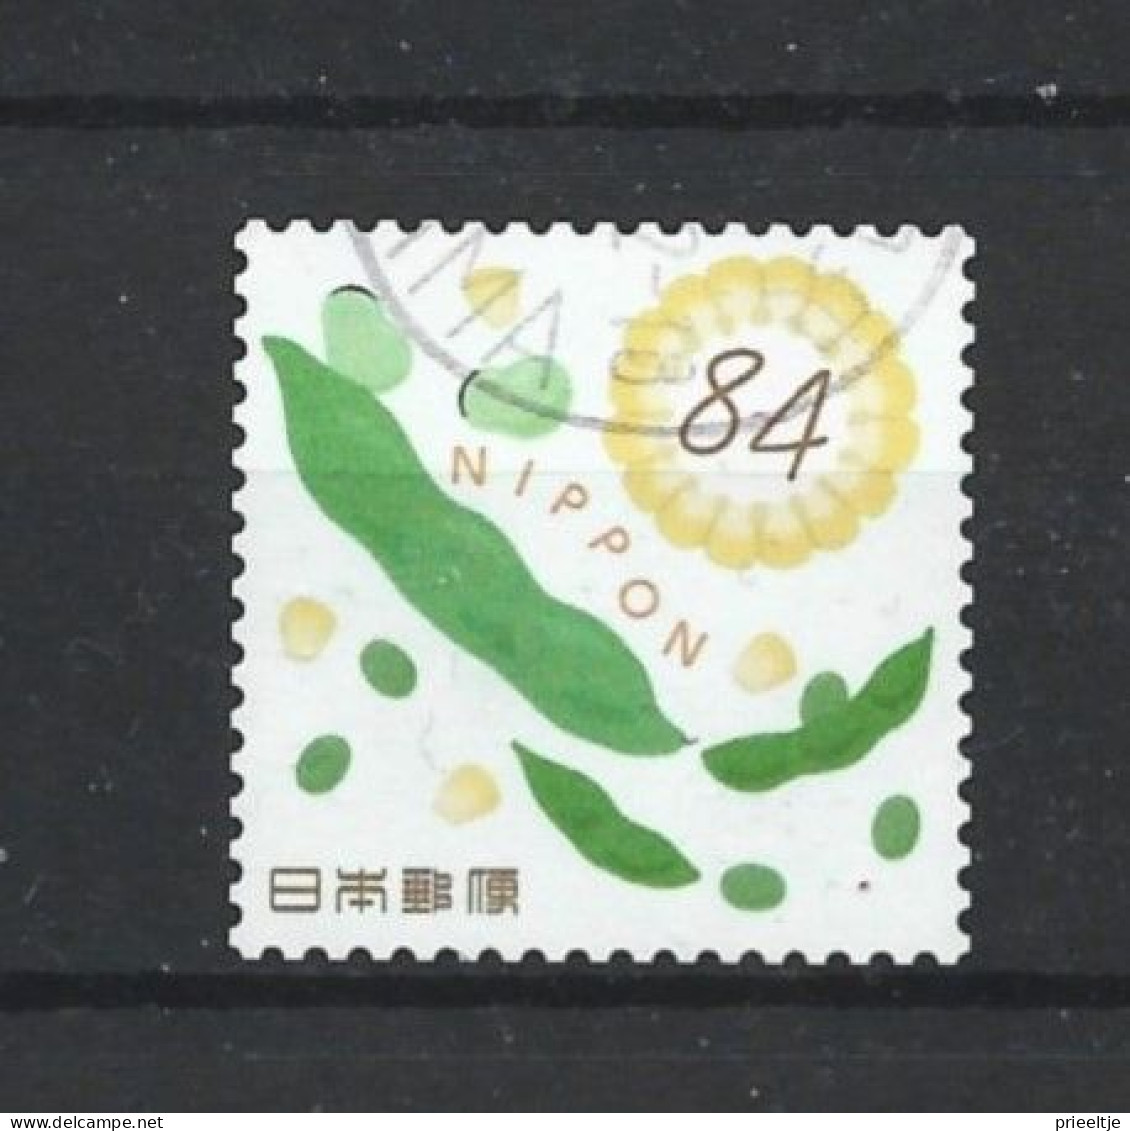 Japan 2021 Summer Greetings Y.T. 10524 (0) - Used Stamps